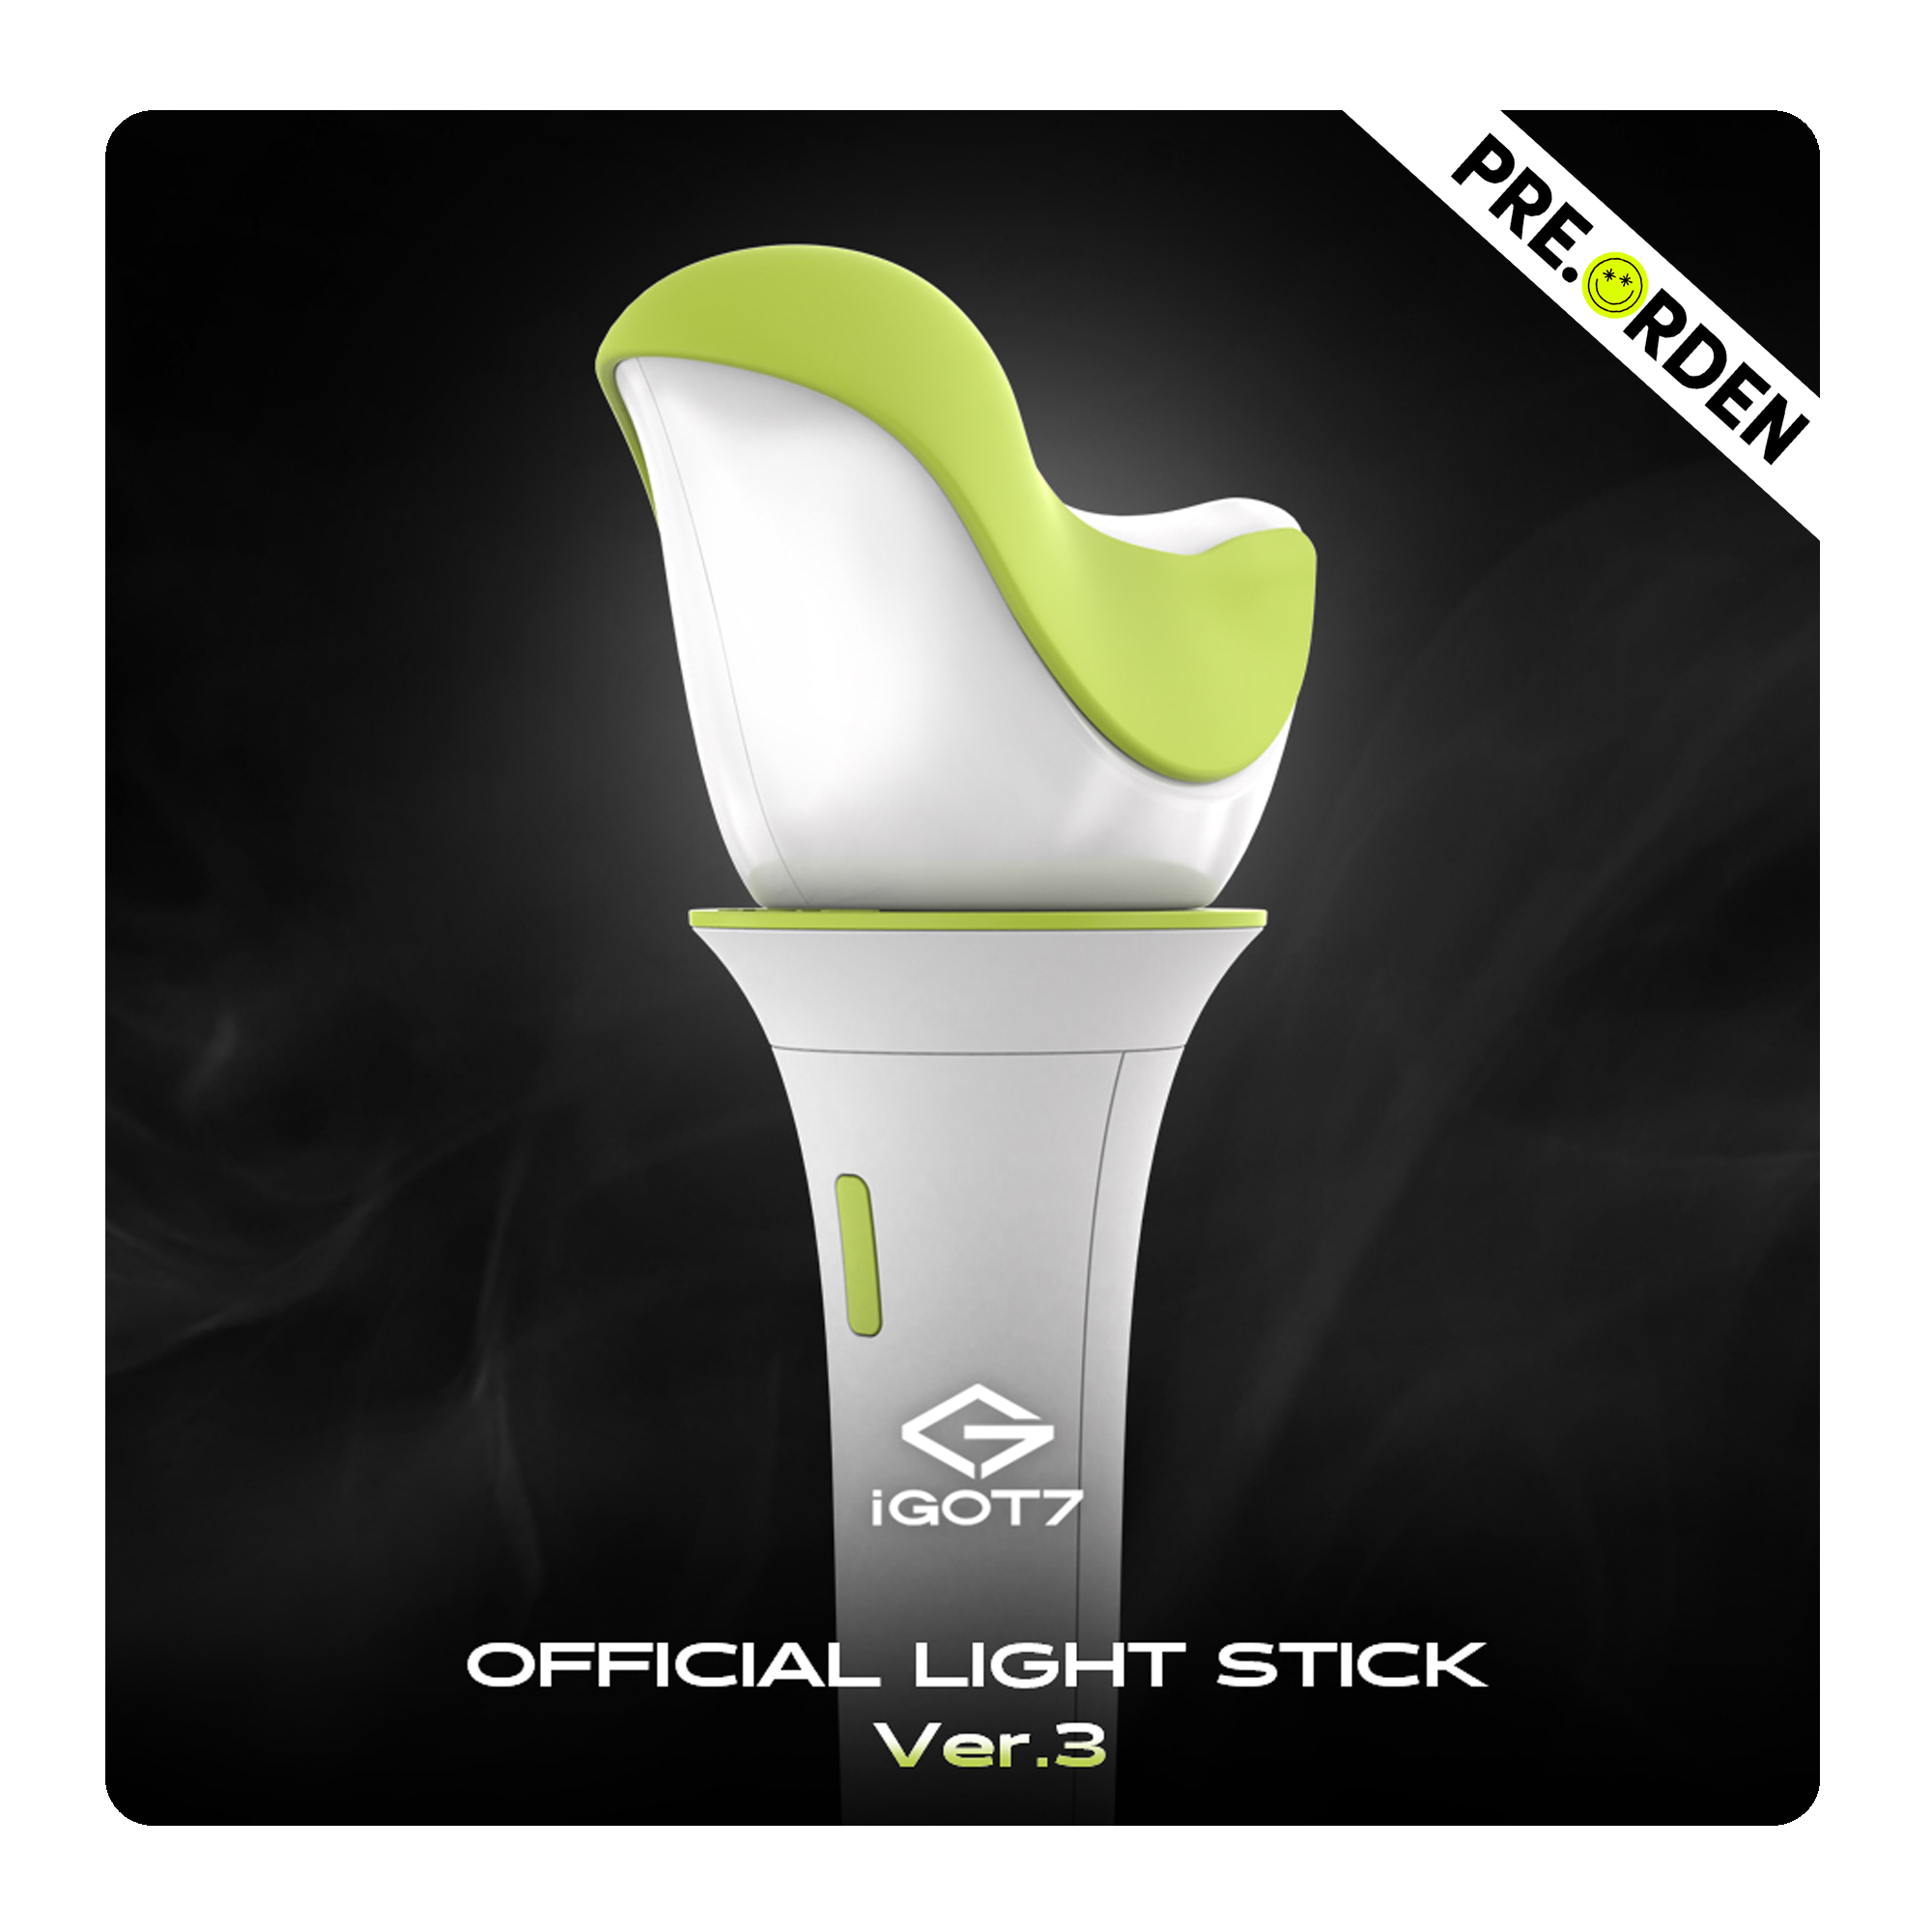 GOT7 - Official Light Stick Ver.3